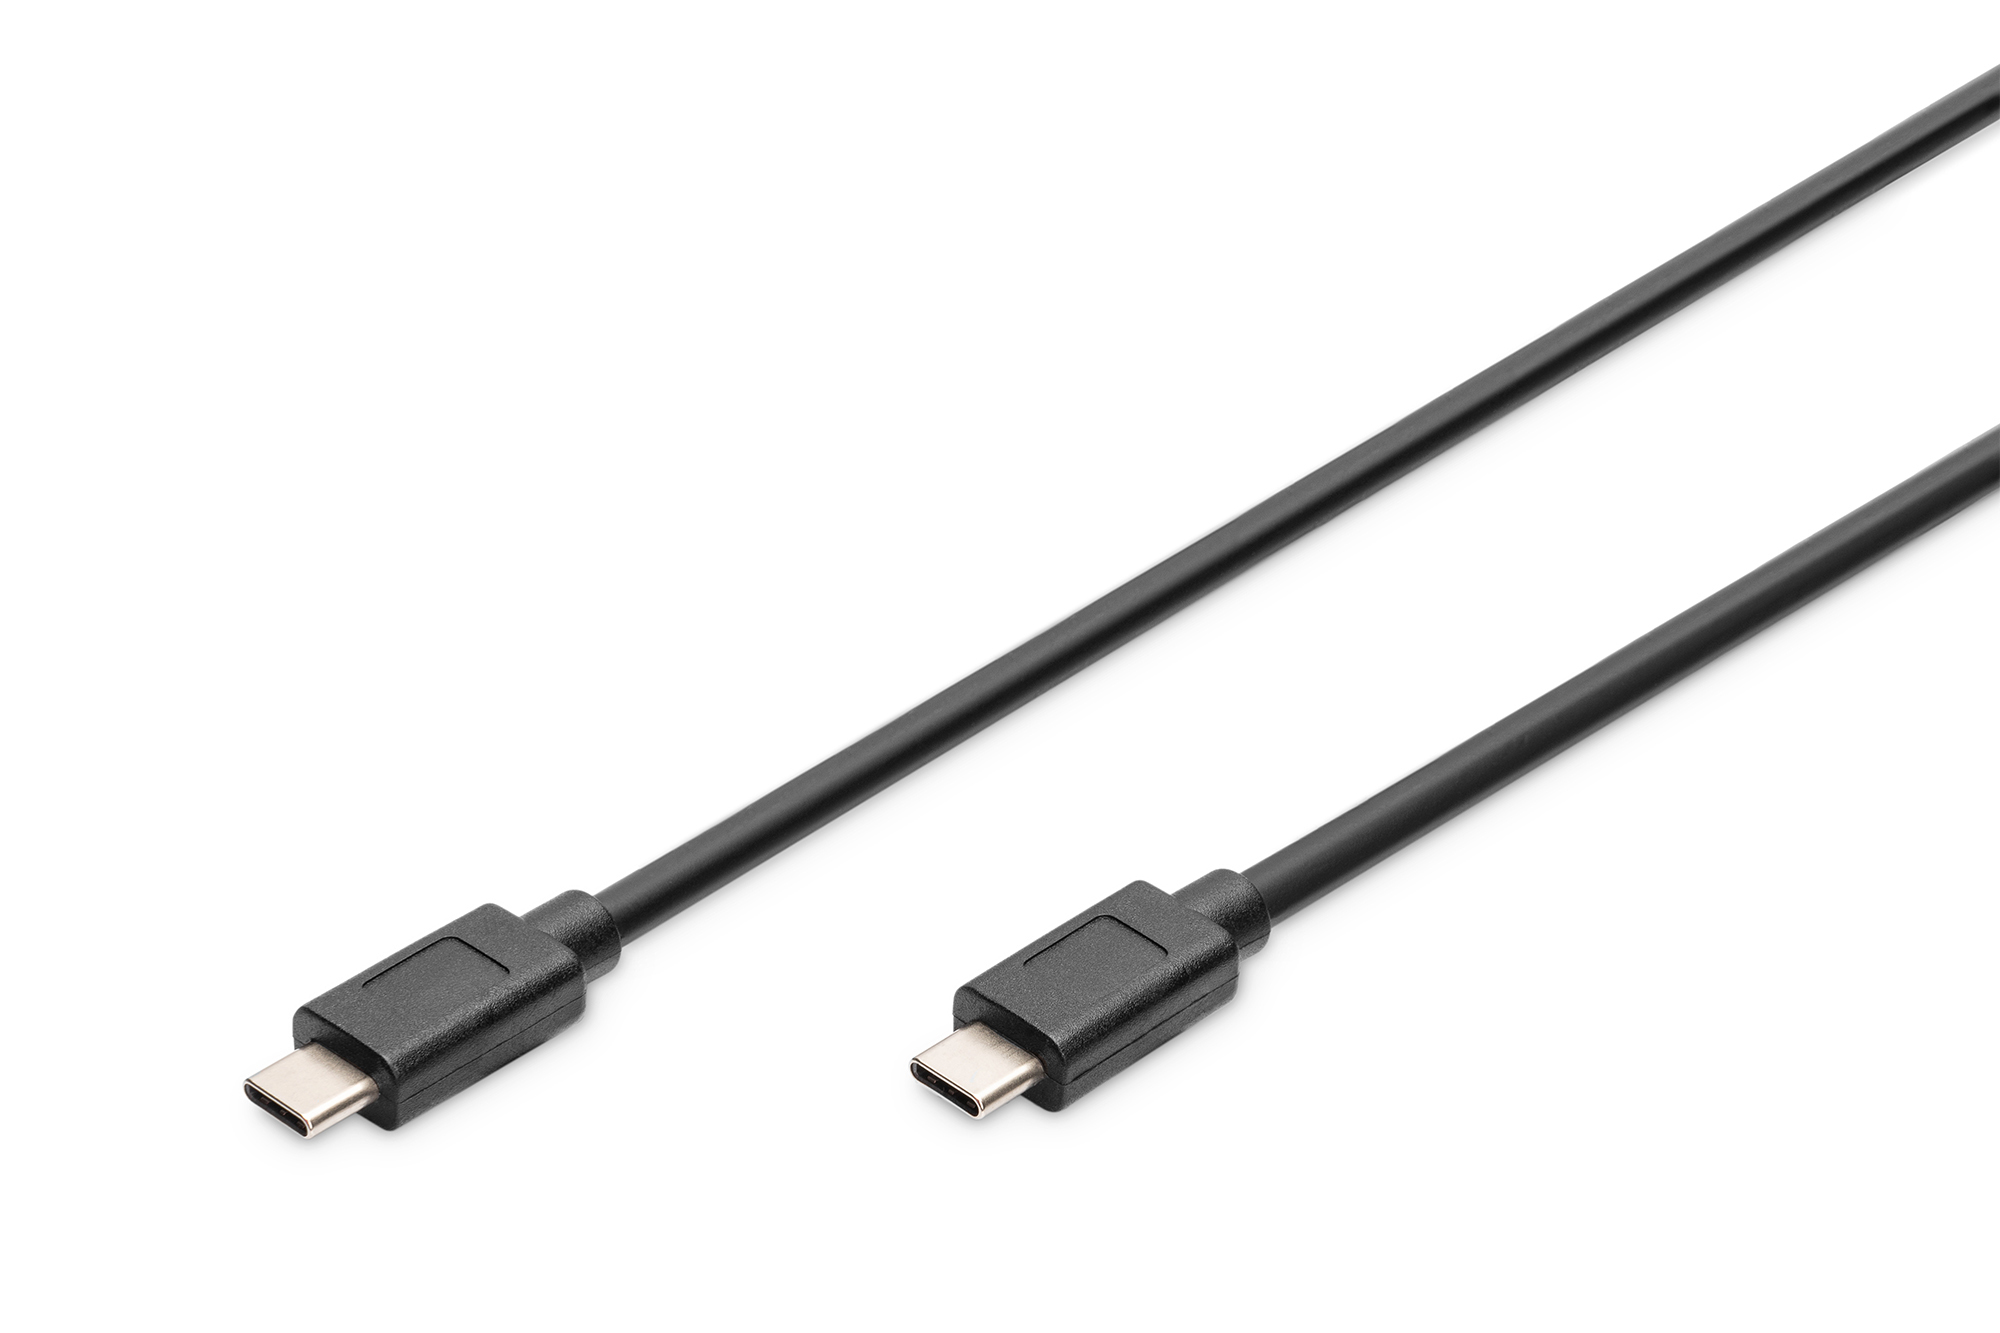 Photos - Cable (video, audio, USB) Digitus USB-C 3.1 Gen2 connection cable, USB-C to USB-C AK-300139-010-S 